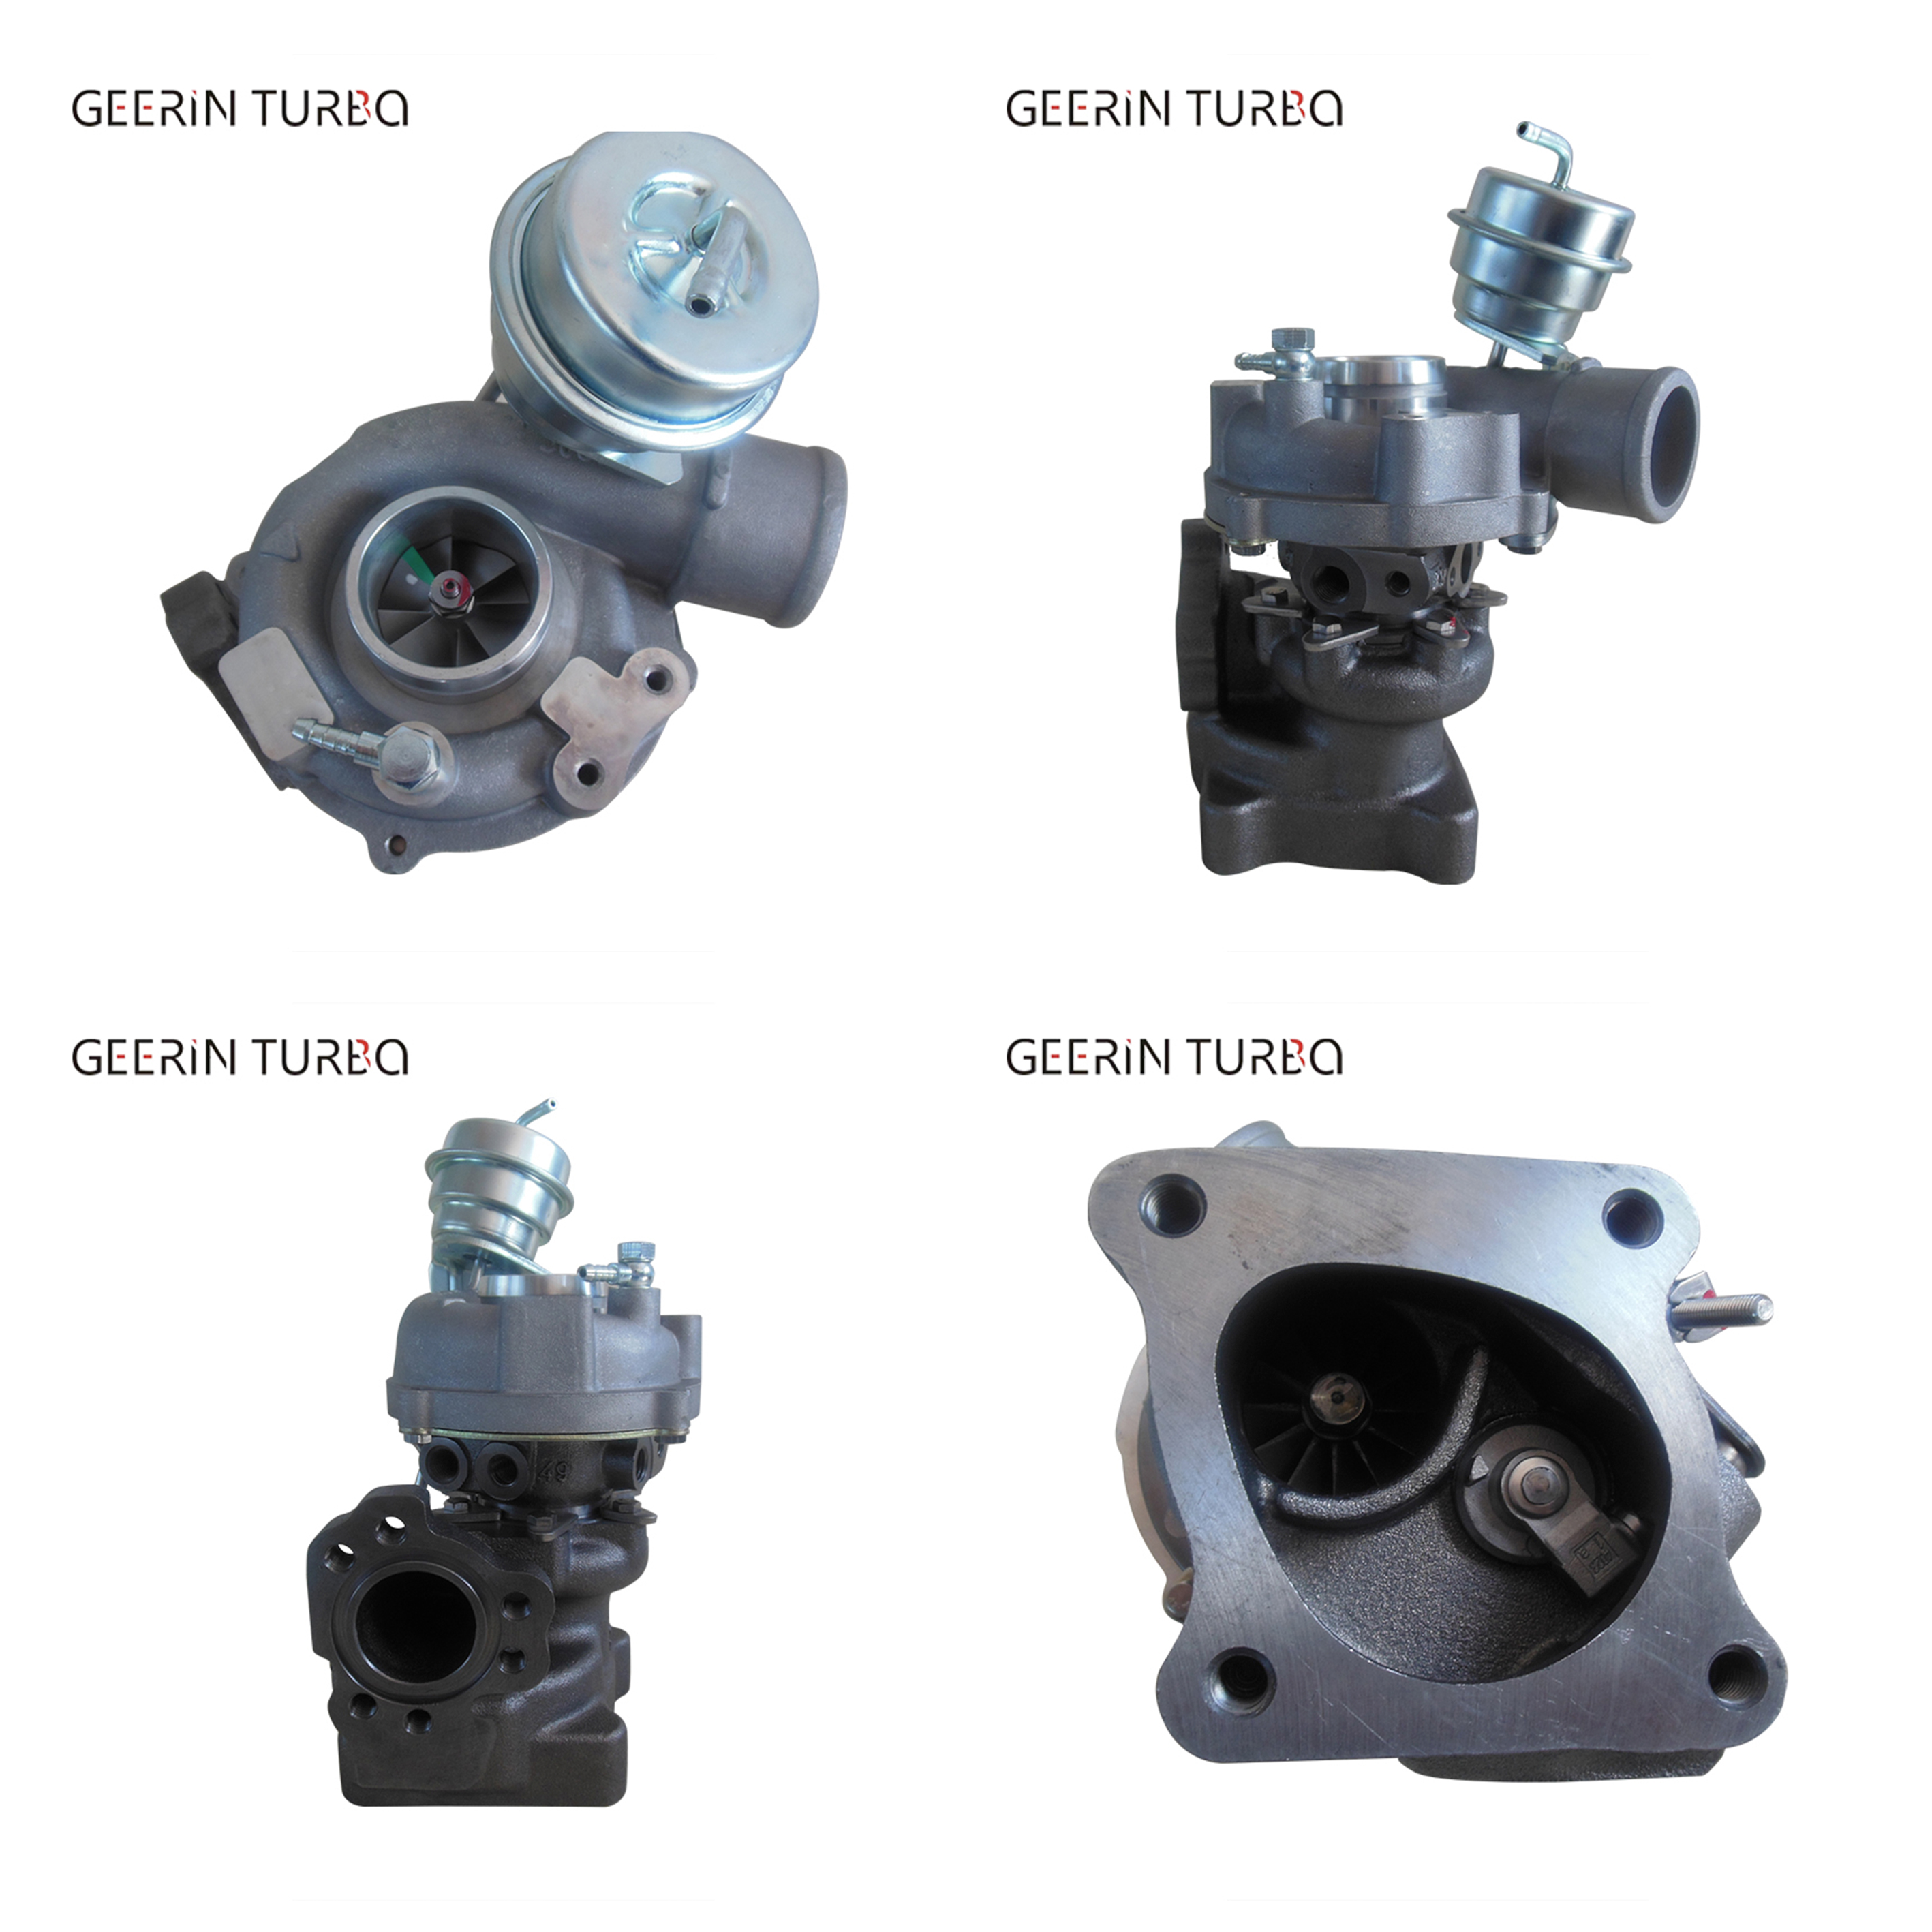 K04 53049880025 Turbo Engines Full Turbolader for Audi RS 4 V6 Biturbo Links Factory